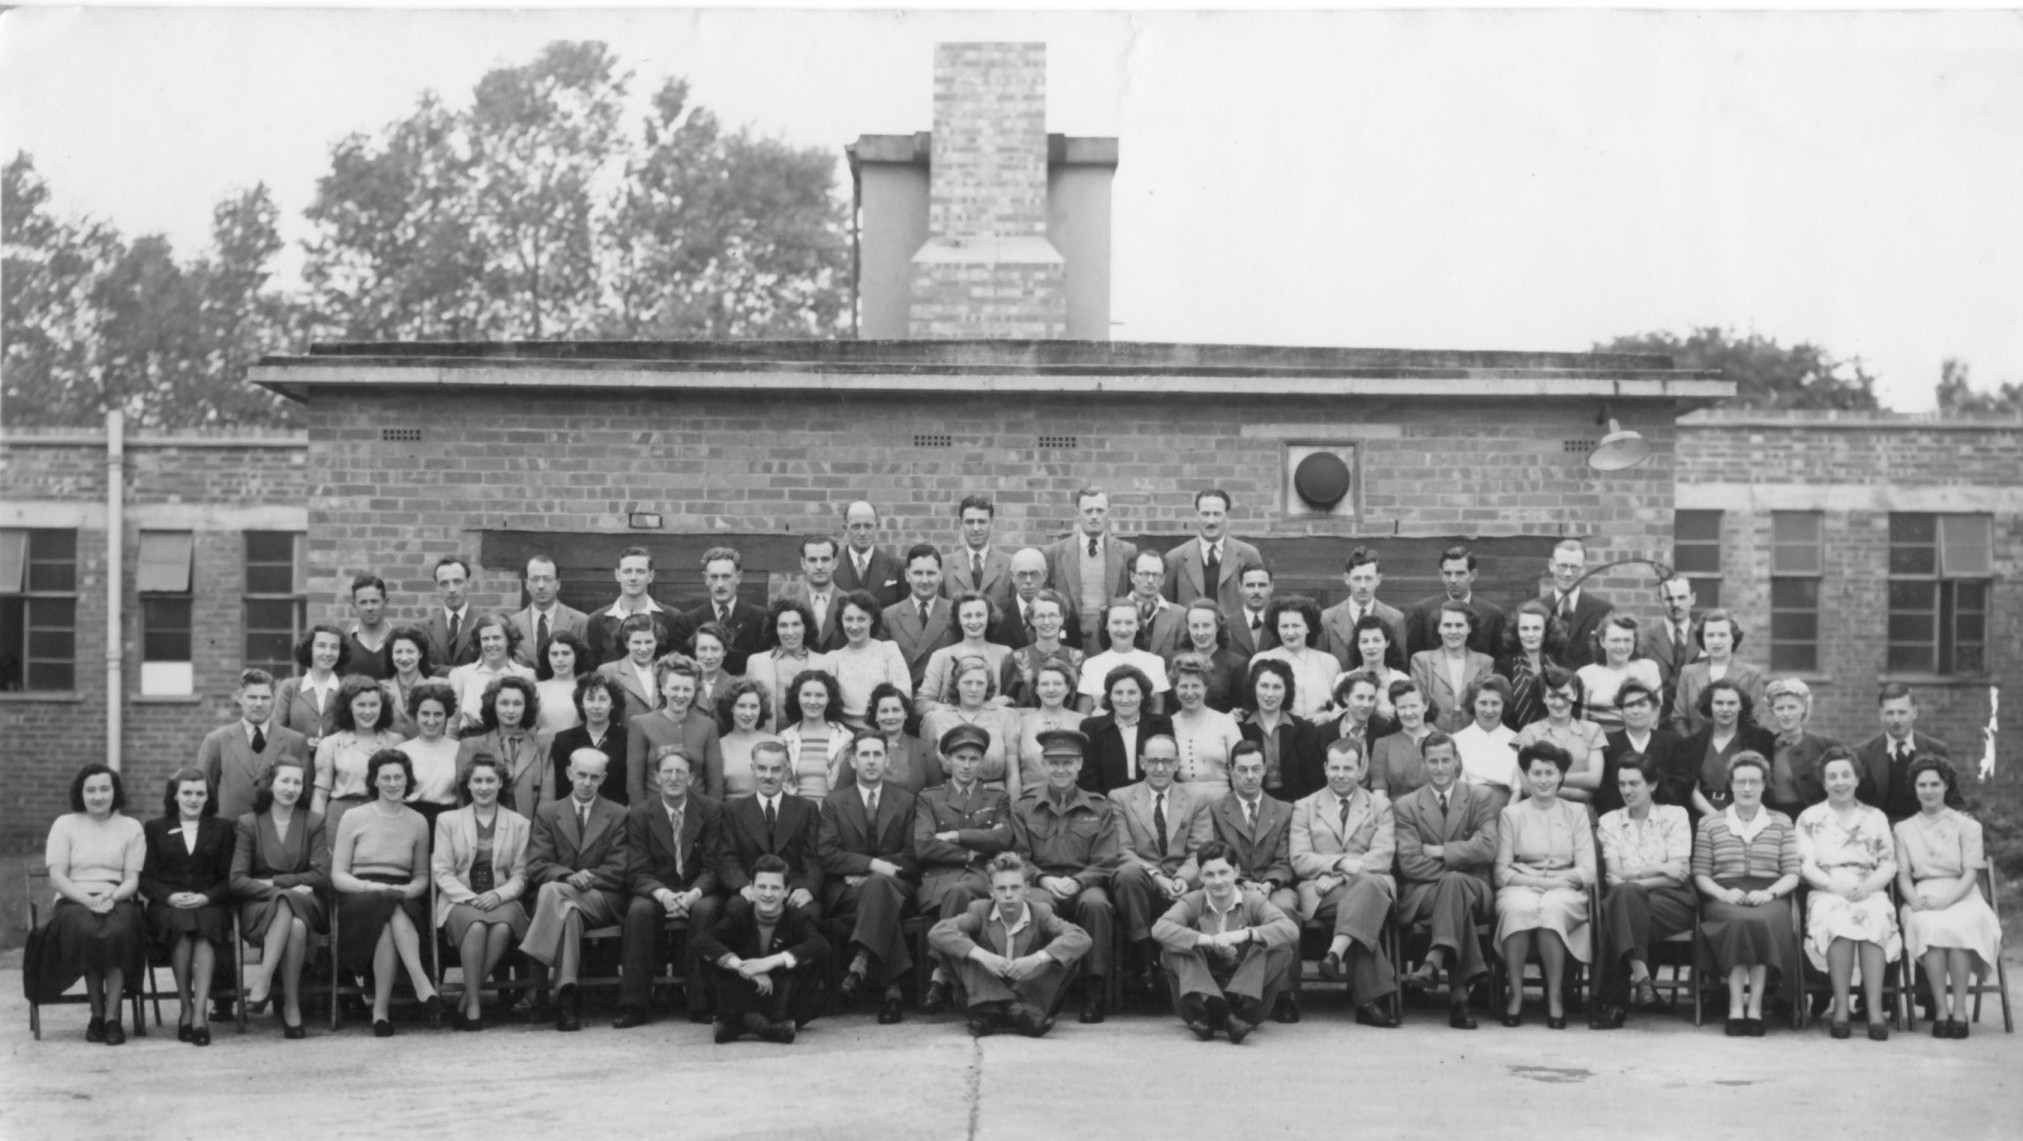 Air Photo division 1948 at Hinchley Wood